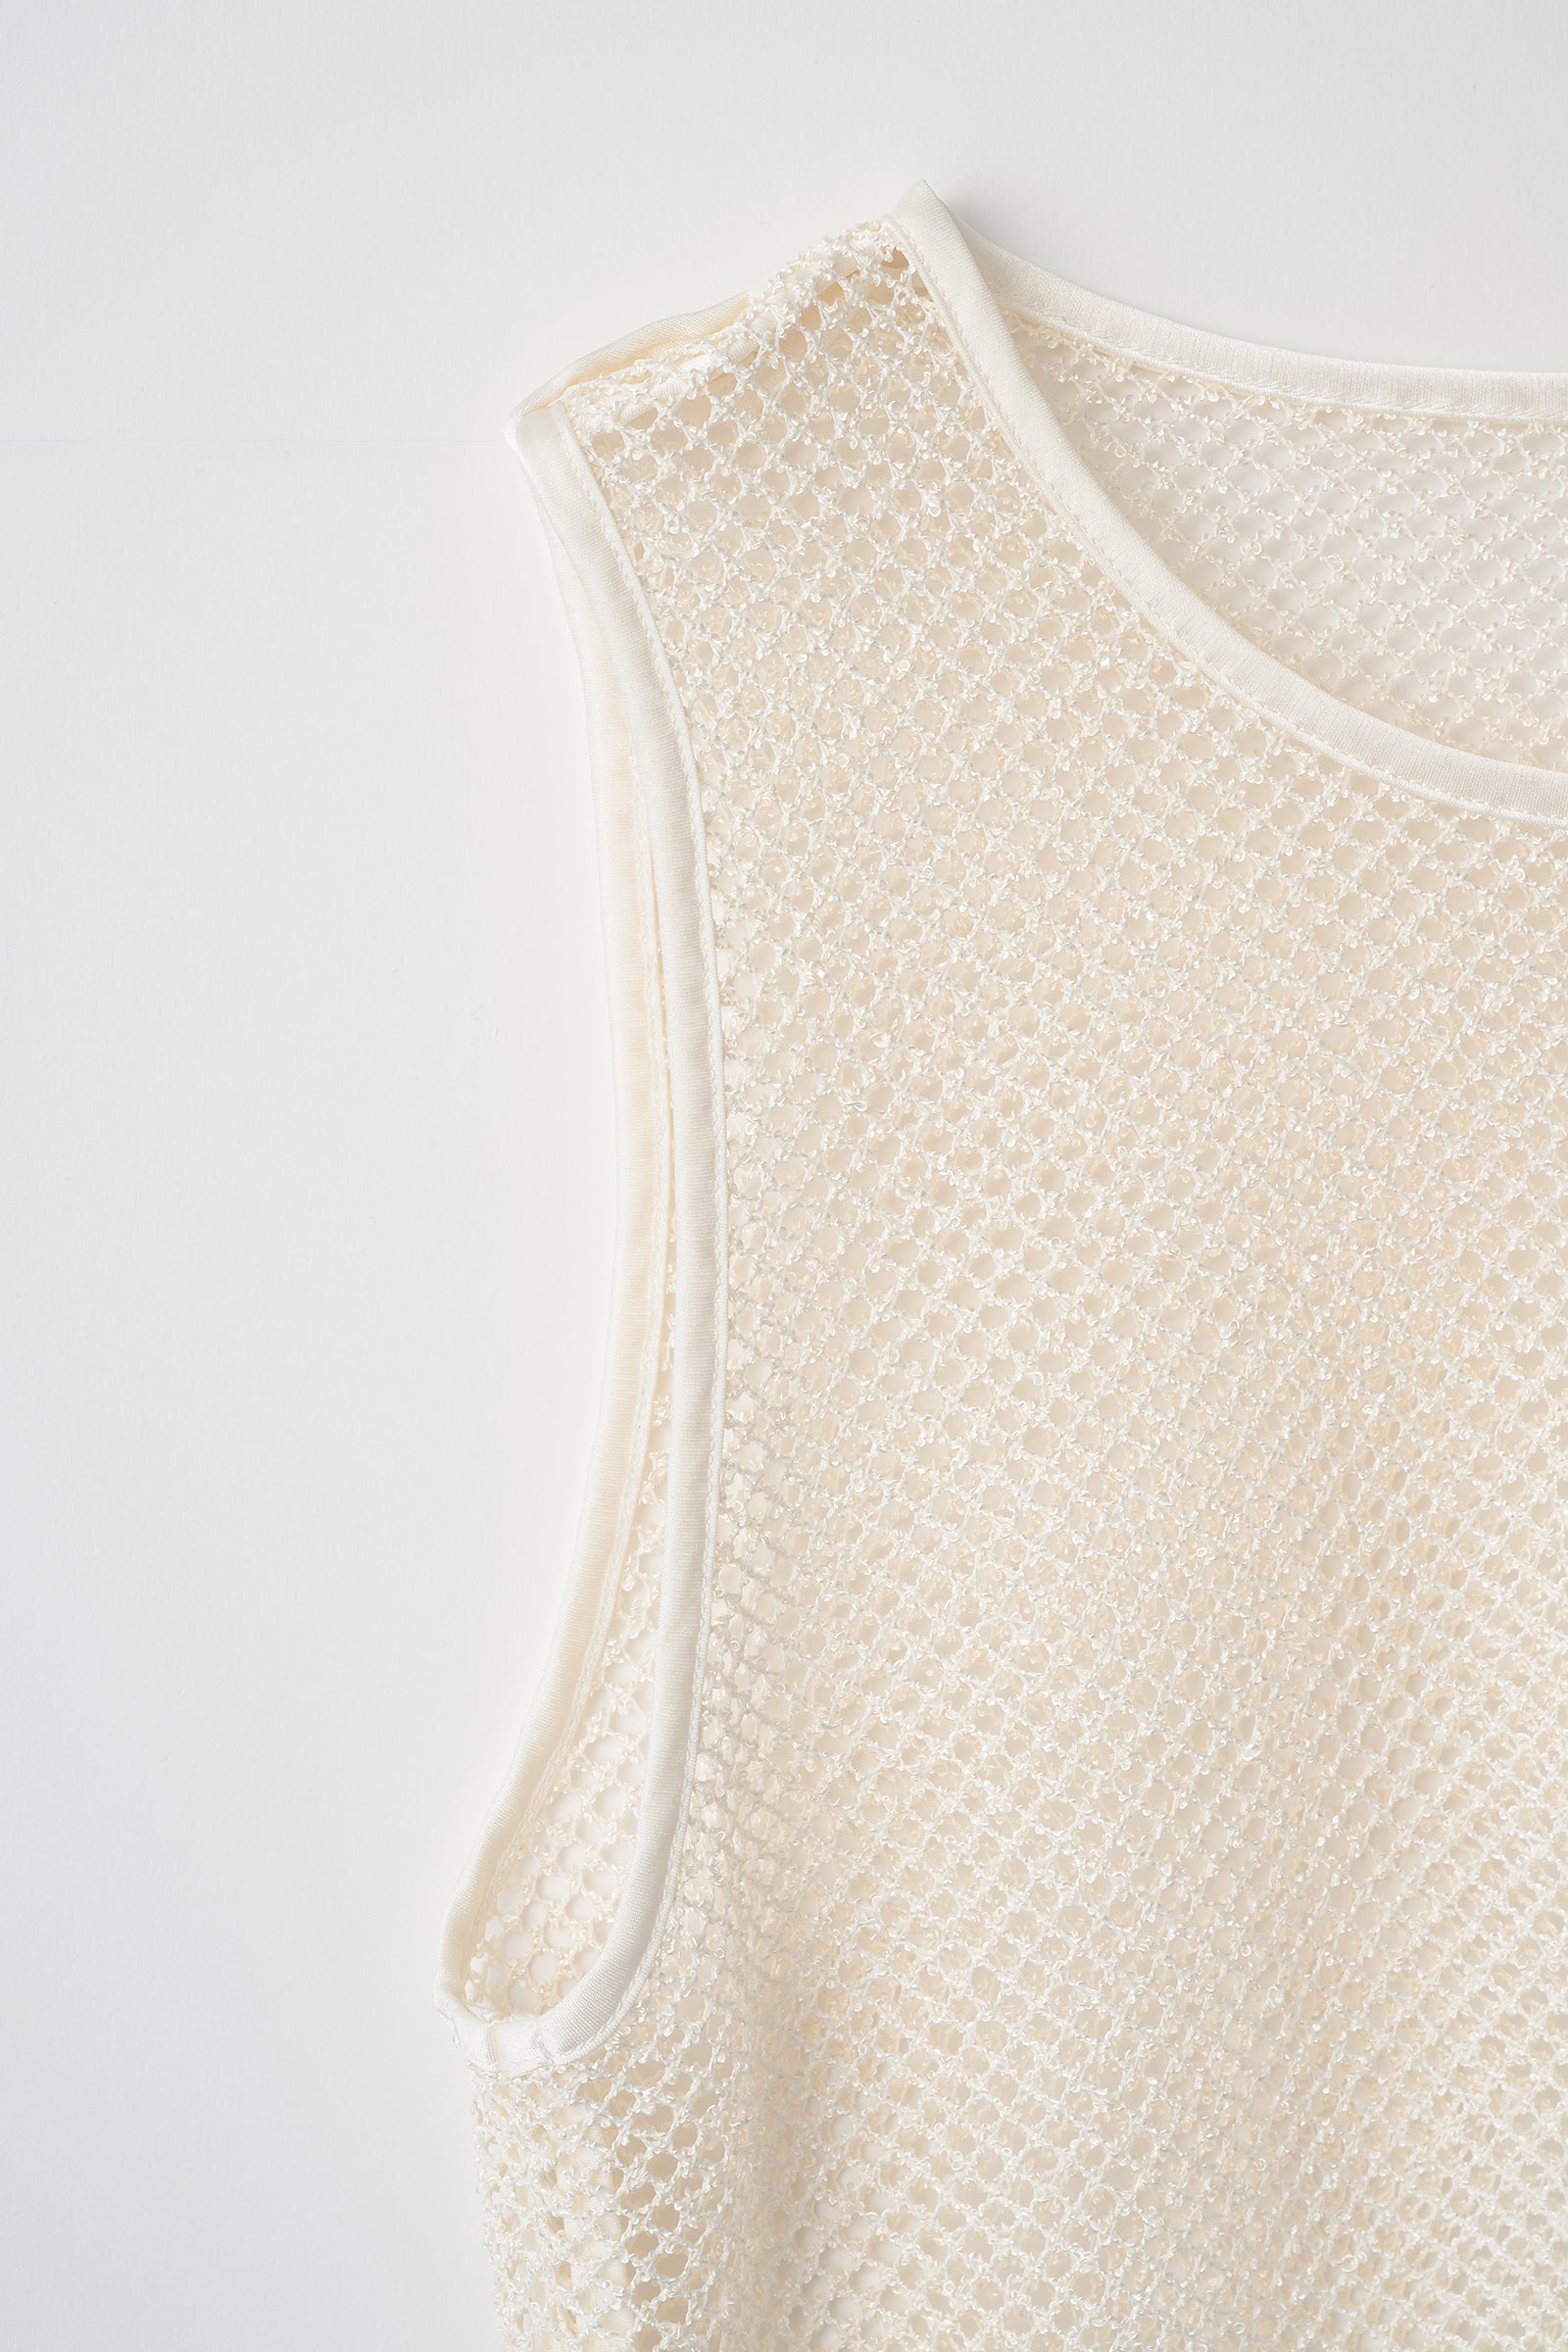 Petal mesh top (White)